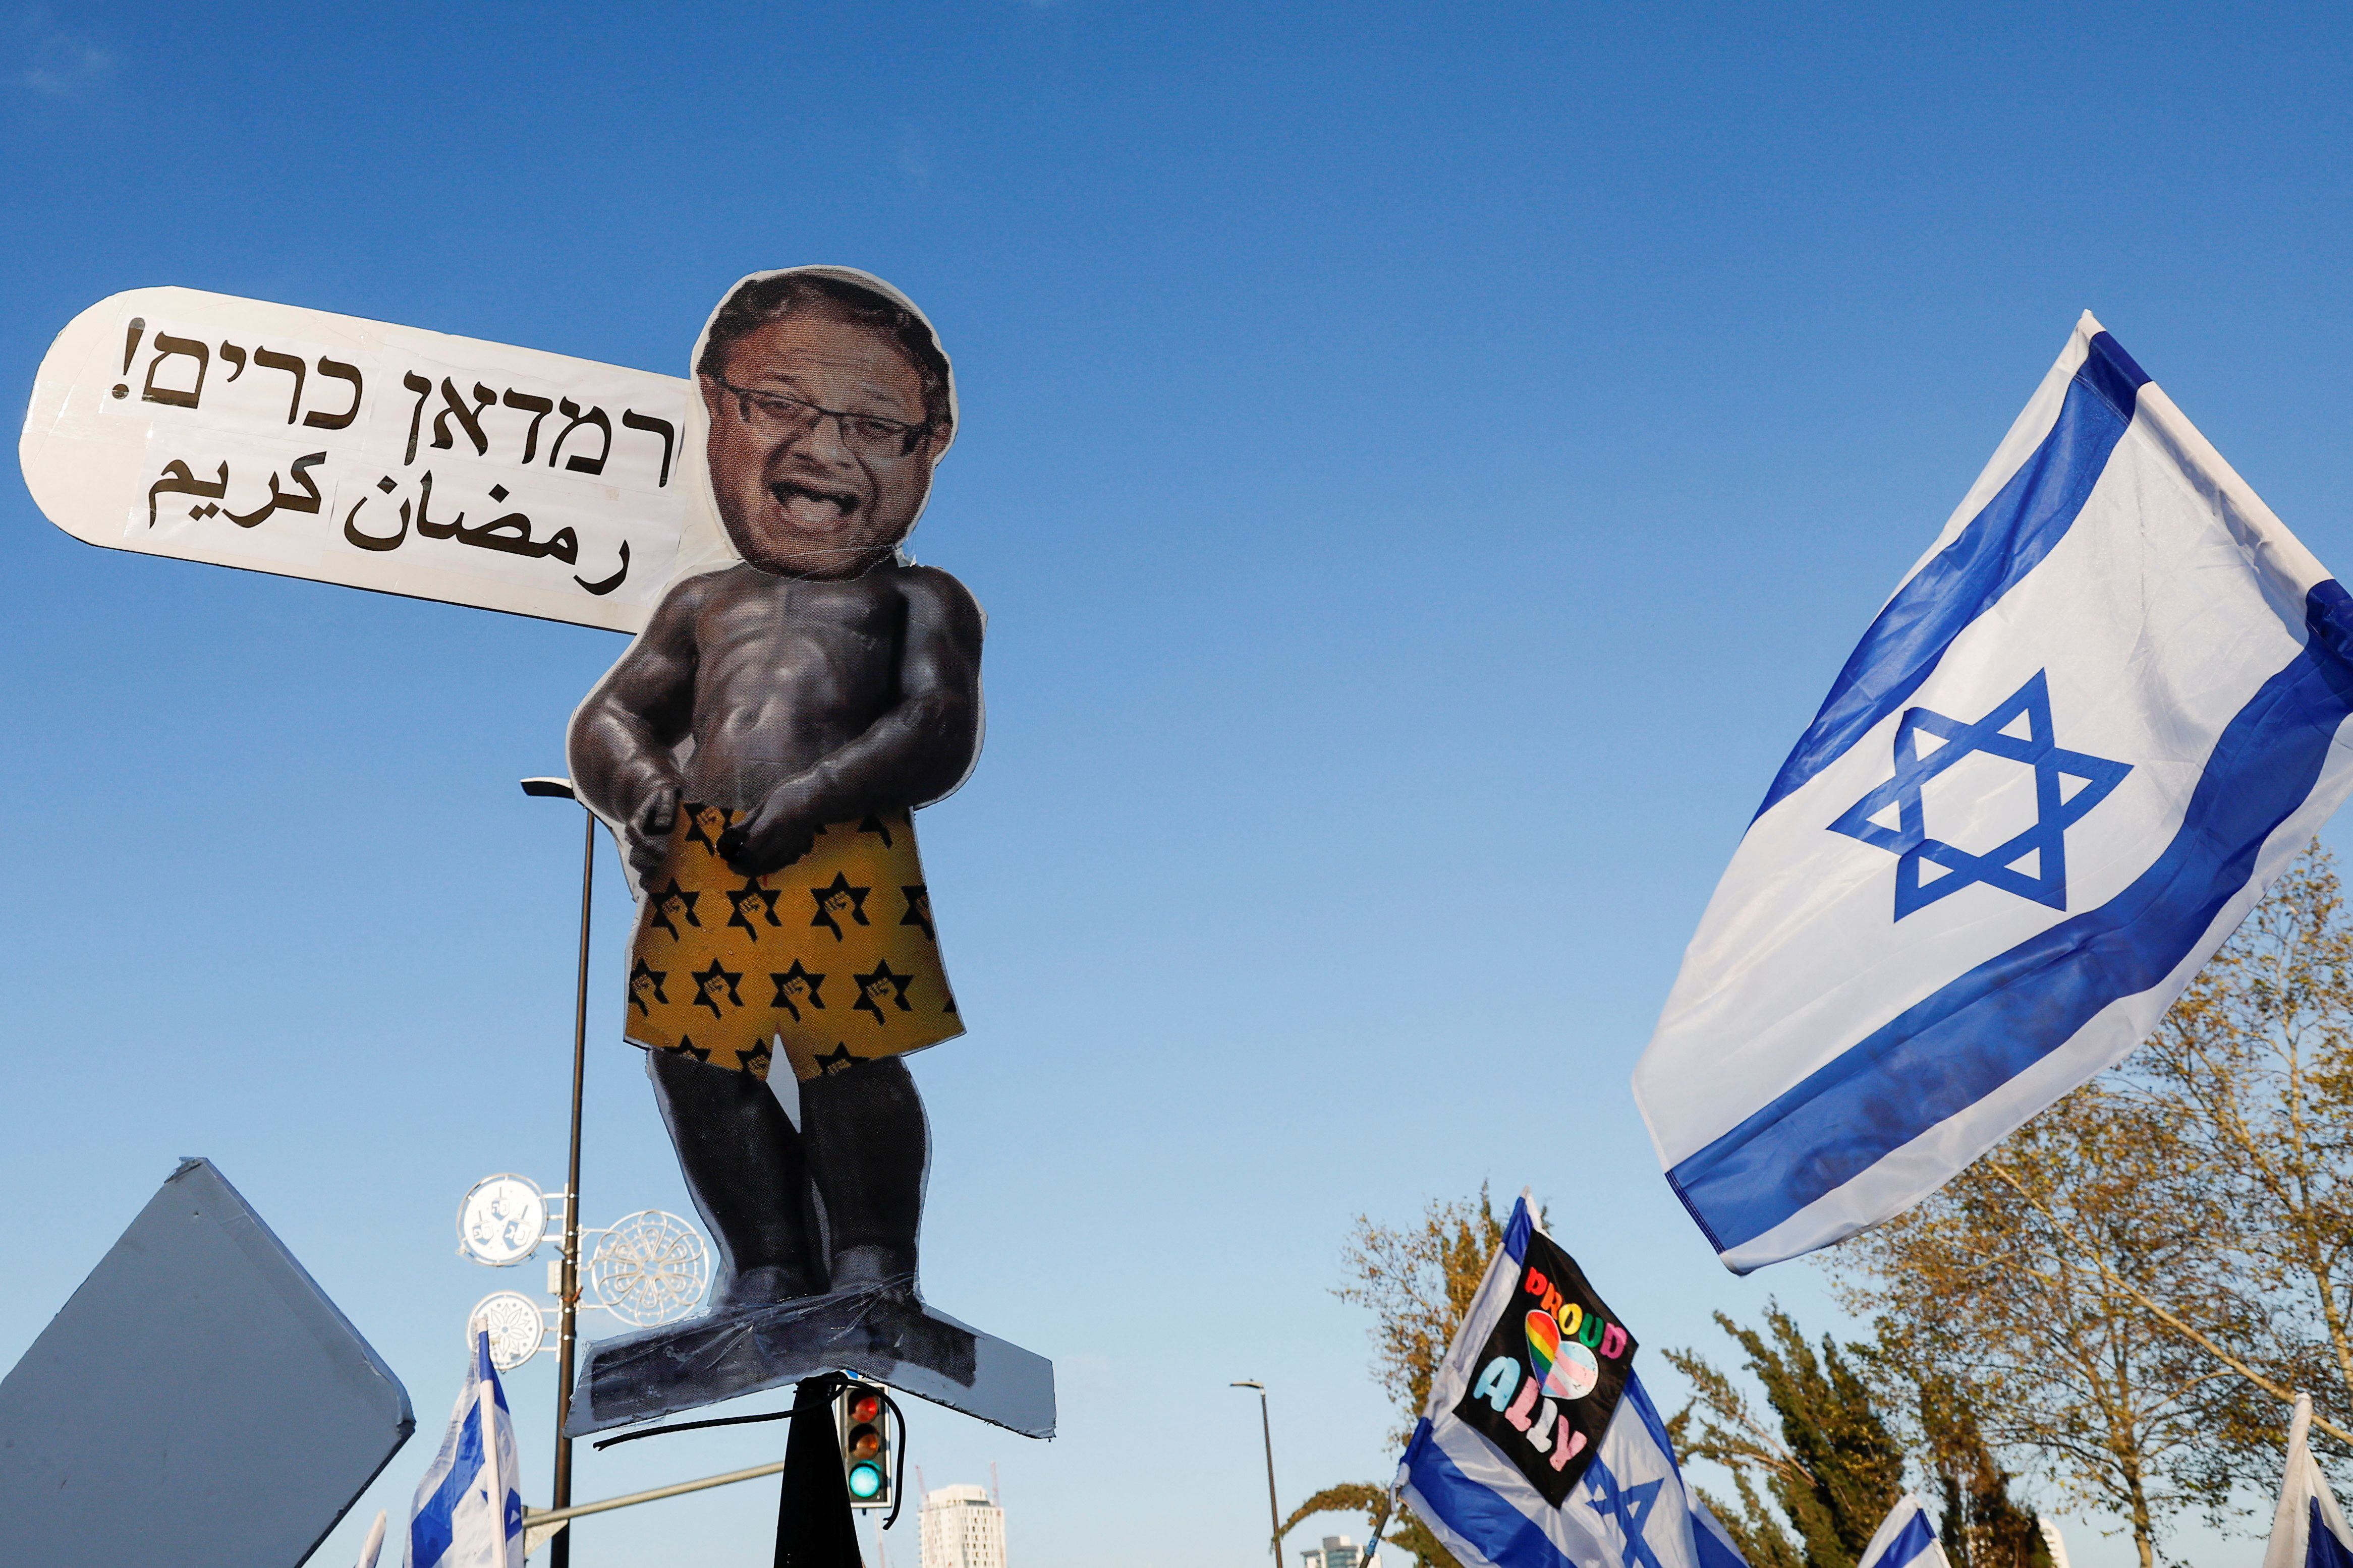 Un manifestante sostiene un cartel ridiculizando el jefe del Ministro de Seguridad Nacional de Israel, Itamar Ben-Gvir, este lunes en Jerusalén.